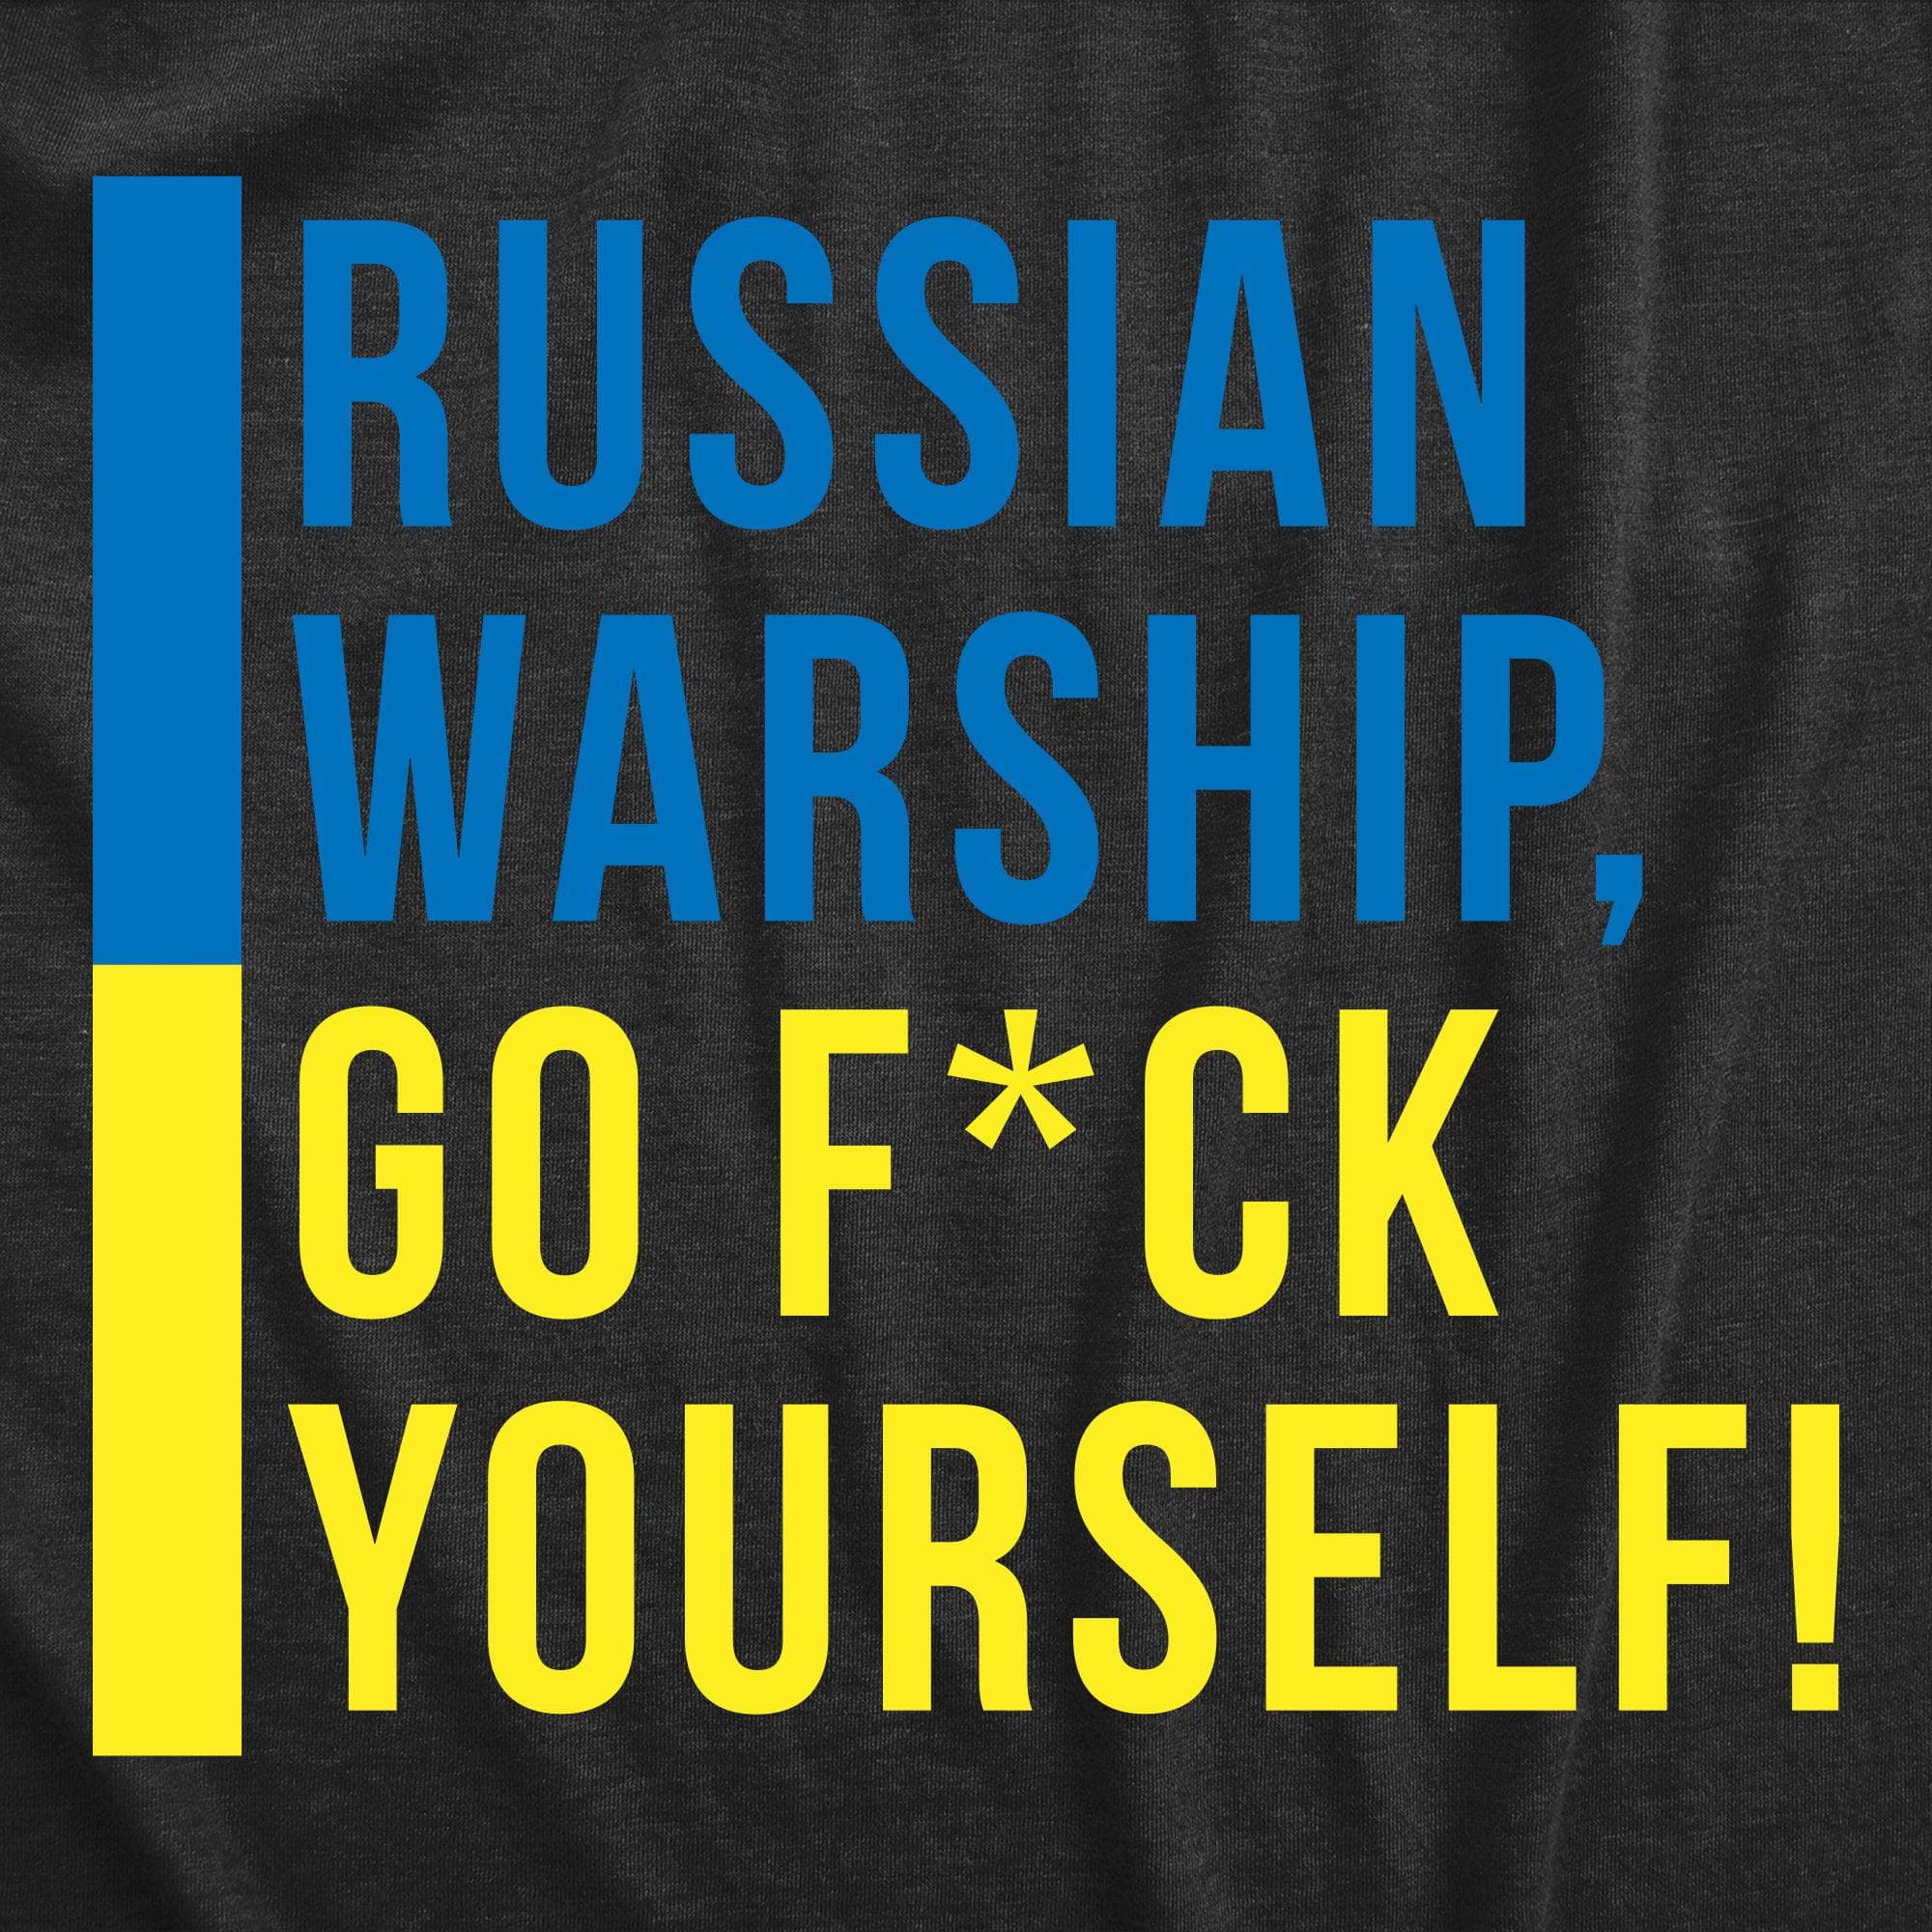 Russian Warship, Go Fuck Yourself Women's Tshirt  -  Crazy Dog T-Shirts